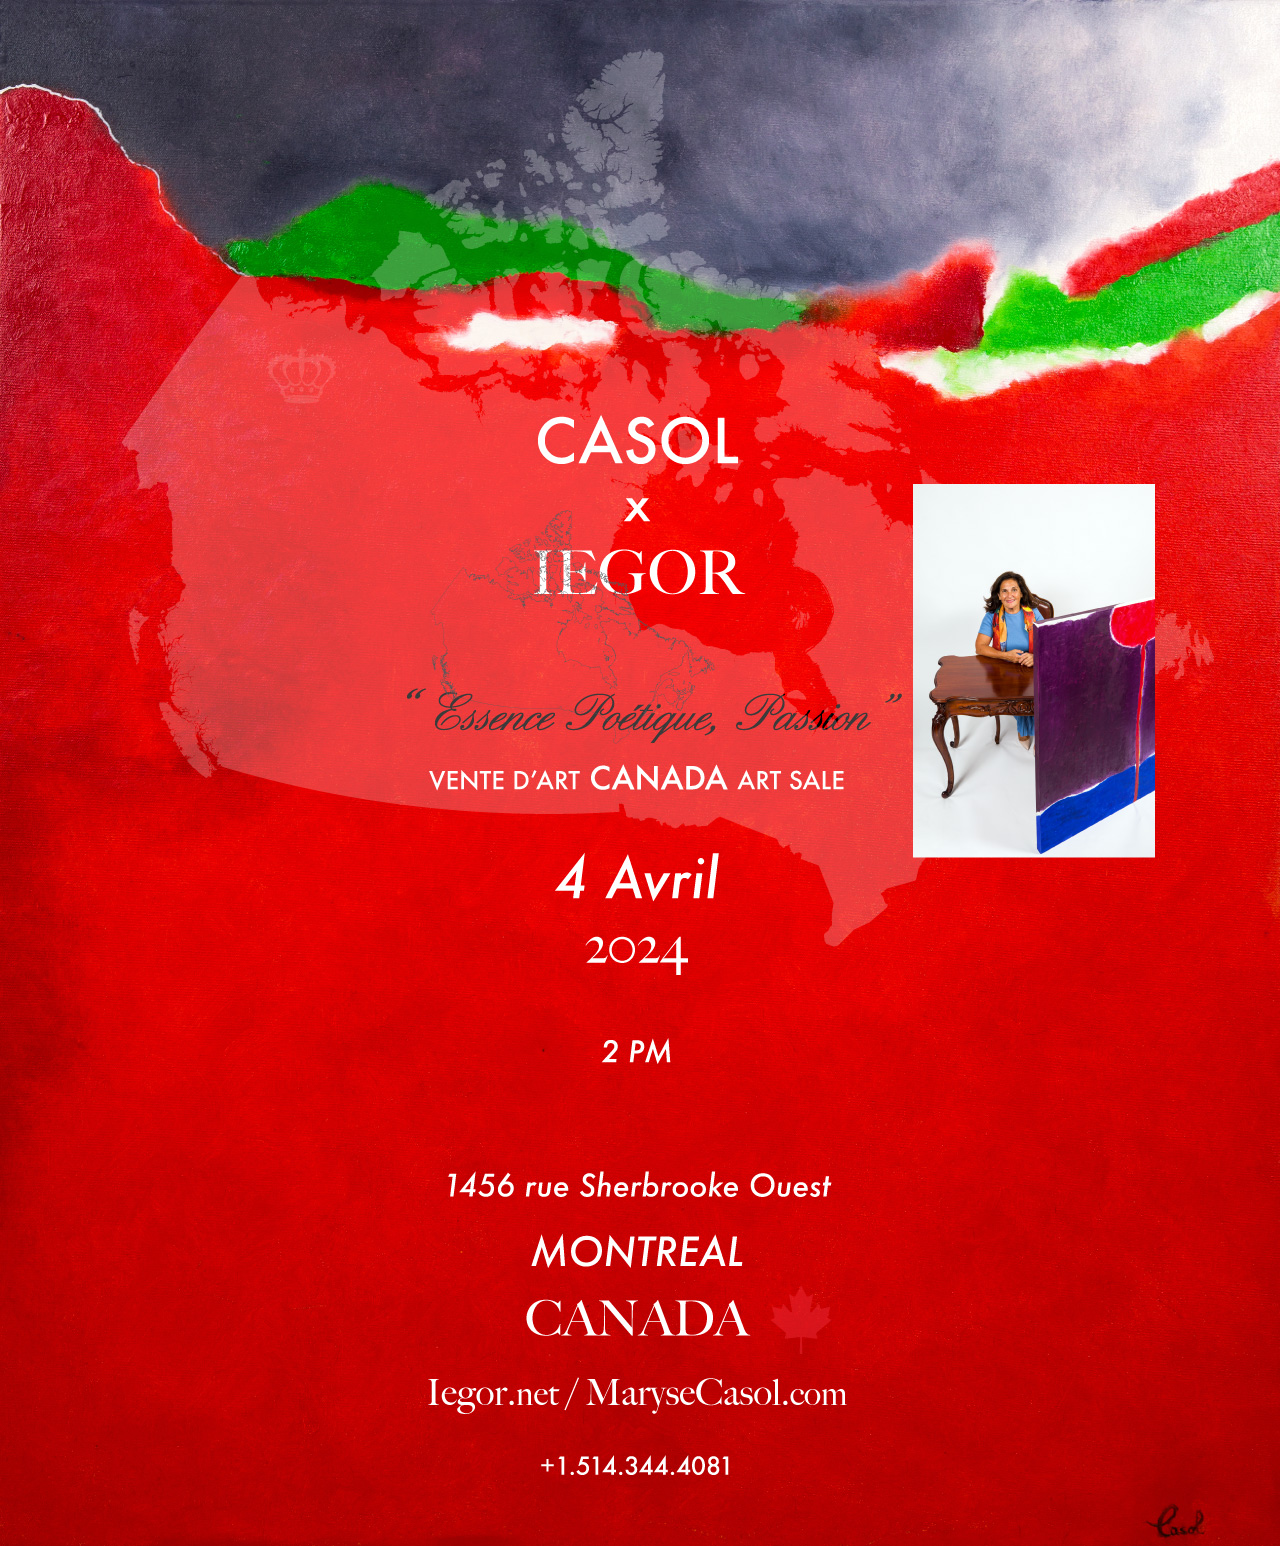 Peinture Essence Poétique, Passion par l'artiste peintre Maryse Casol, à vendre chez Iegor Maison des Encans à Montreal au Canada le 4 Avril, 2024